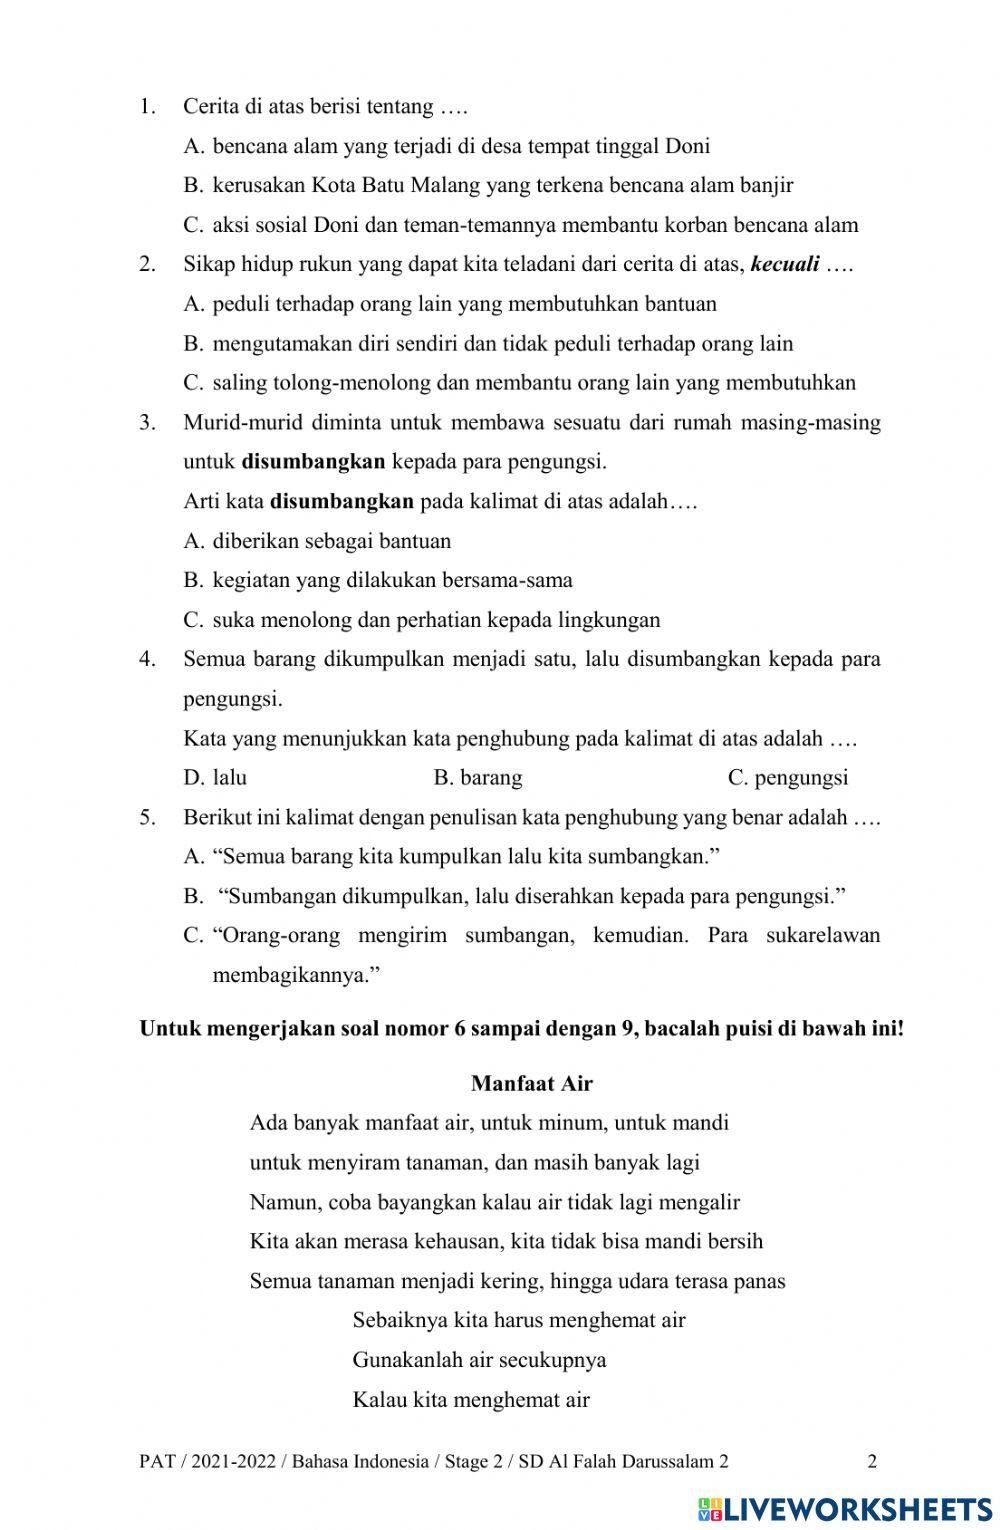 PAT Bahasa Indonesia